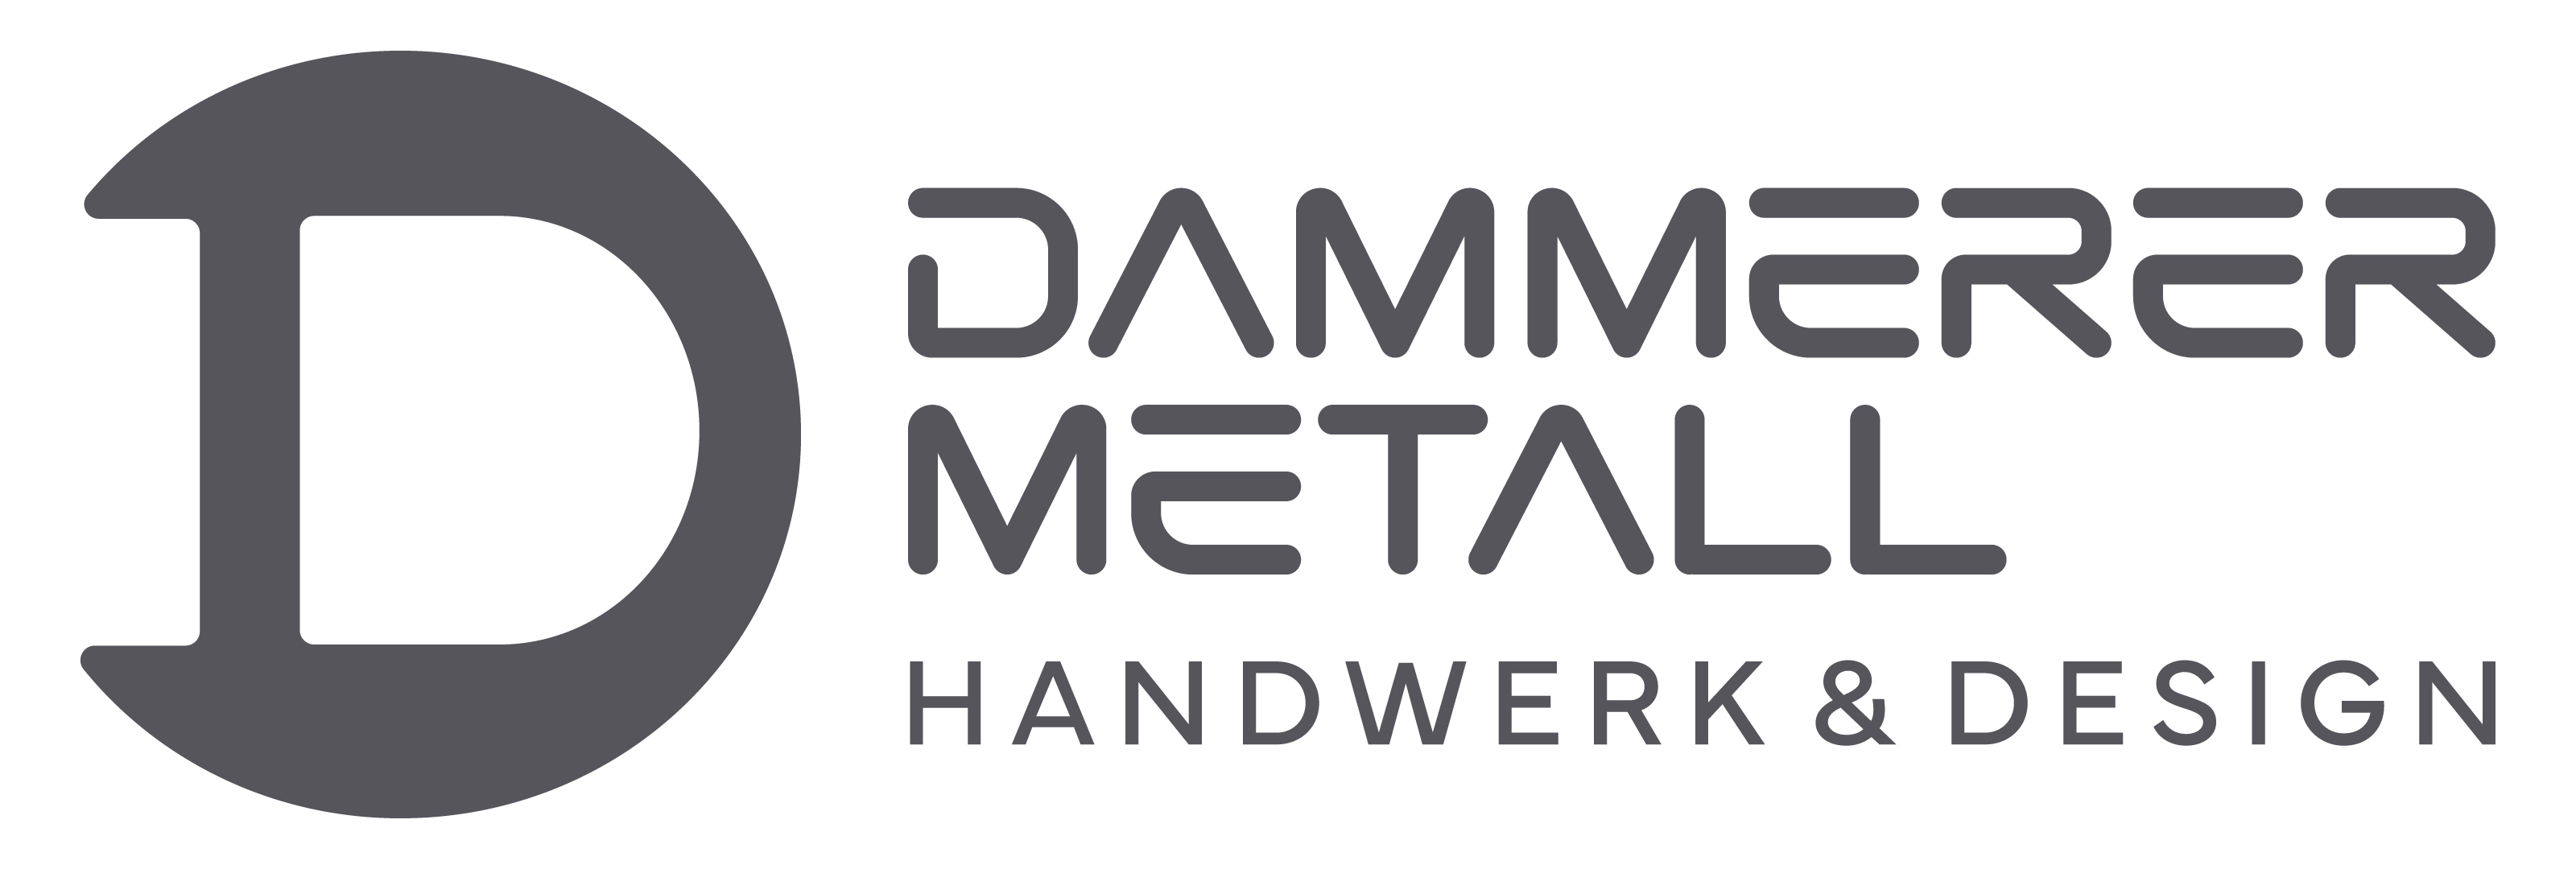 Dammerer-Metall Logo+Schriftzug grau